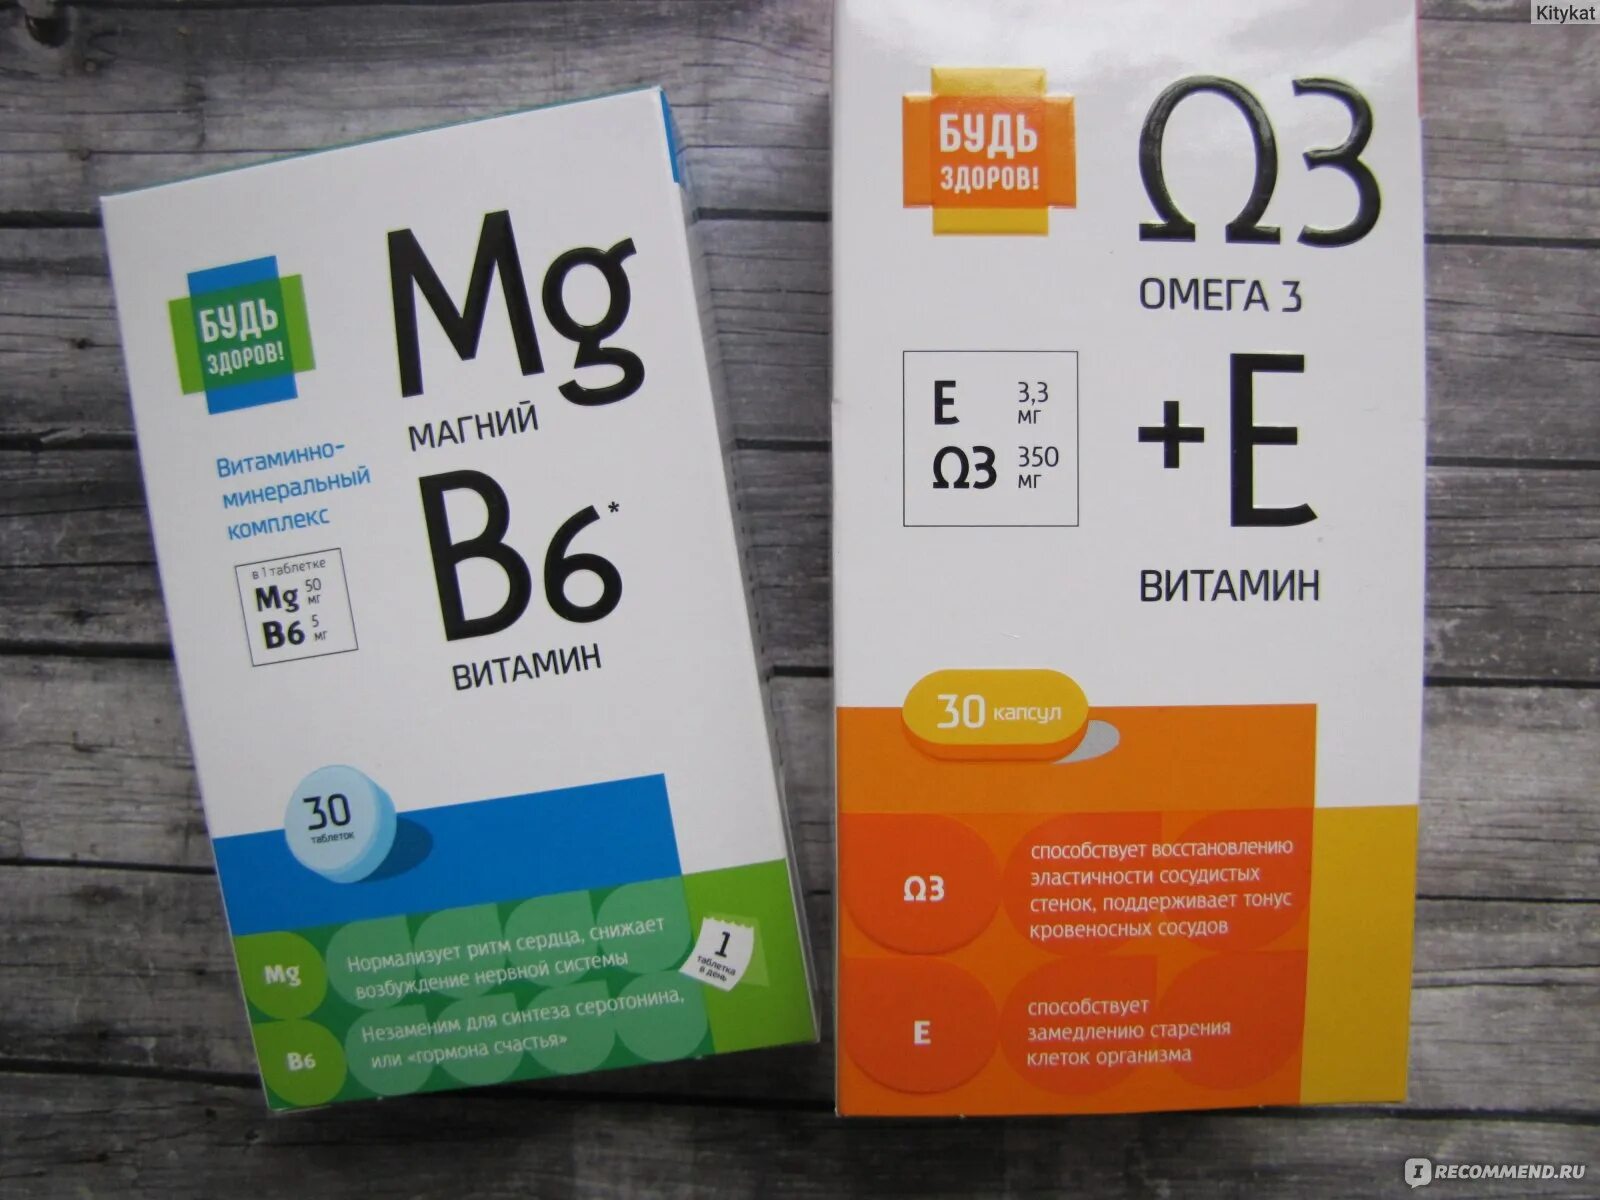 Будь здоров витамины группы b таб 30. Магний б6 будь здоров витамины. Витаминно минеральный комплекс магний в6 будь здоров. Витаминно минеральный комплекс магний в6. Купить хорошие витамины группы в